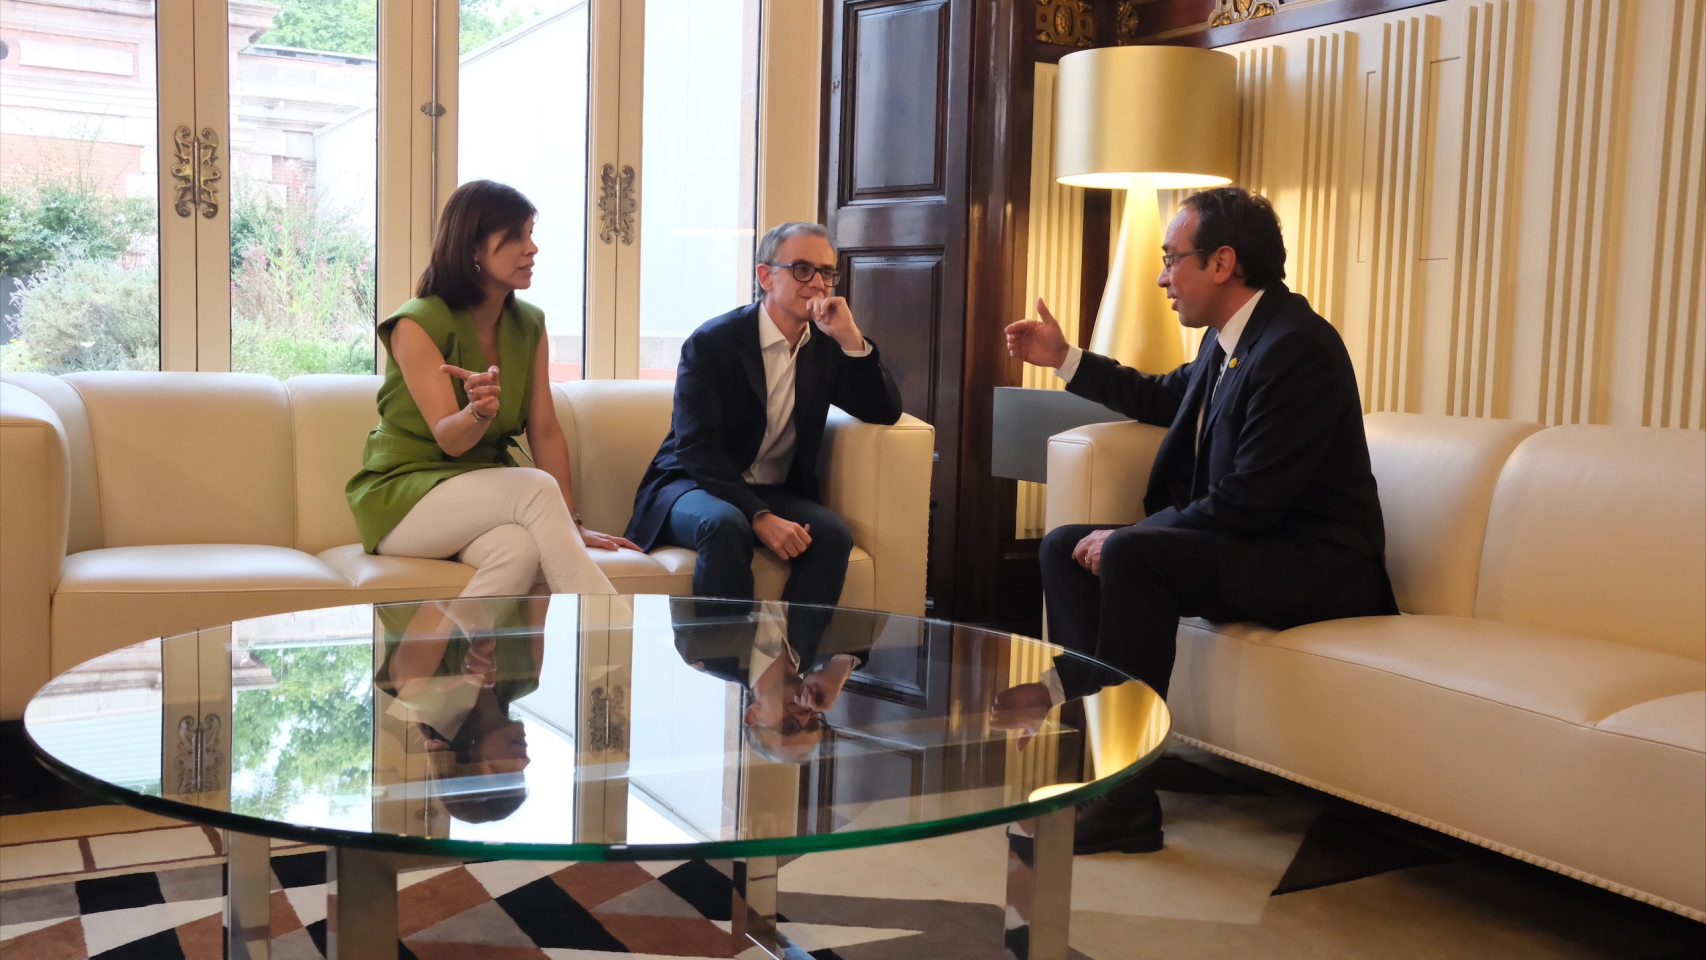 El presidente del grupo parlamentario de ERC Josep Maria Jové y la portavoz Marta Vilalta se reúnen con el presidente del Parlament Josep Rull